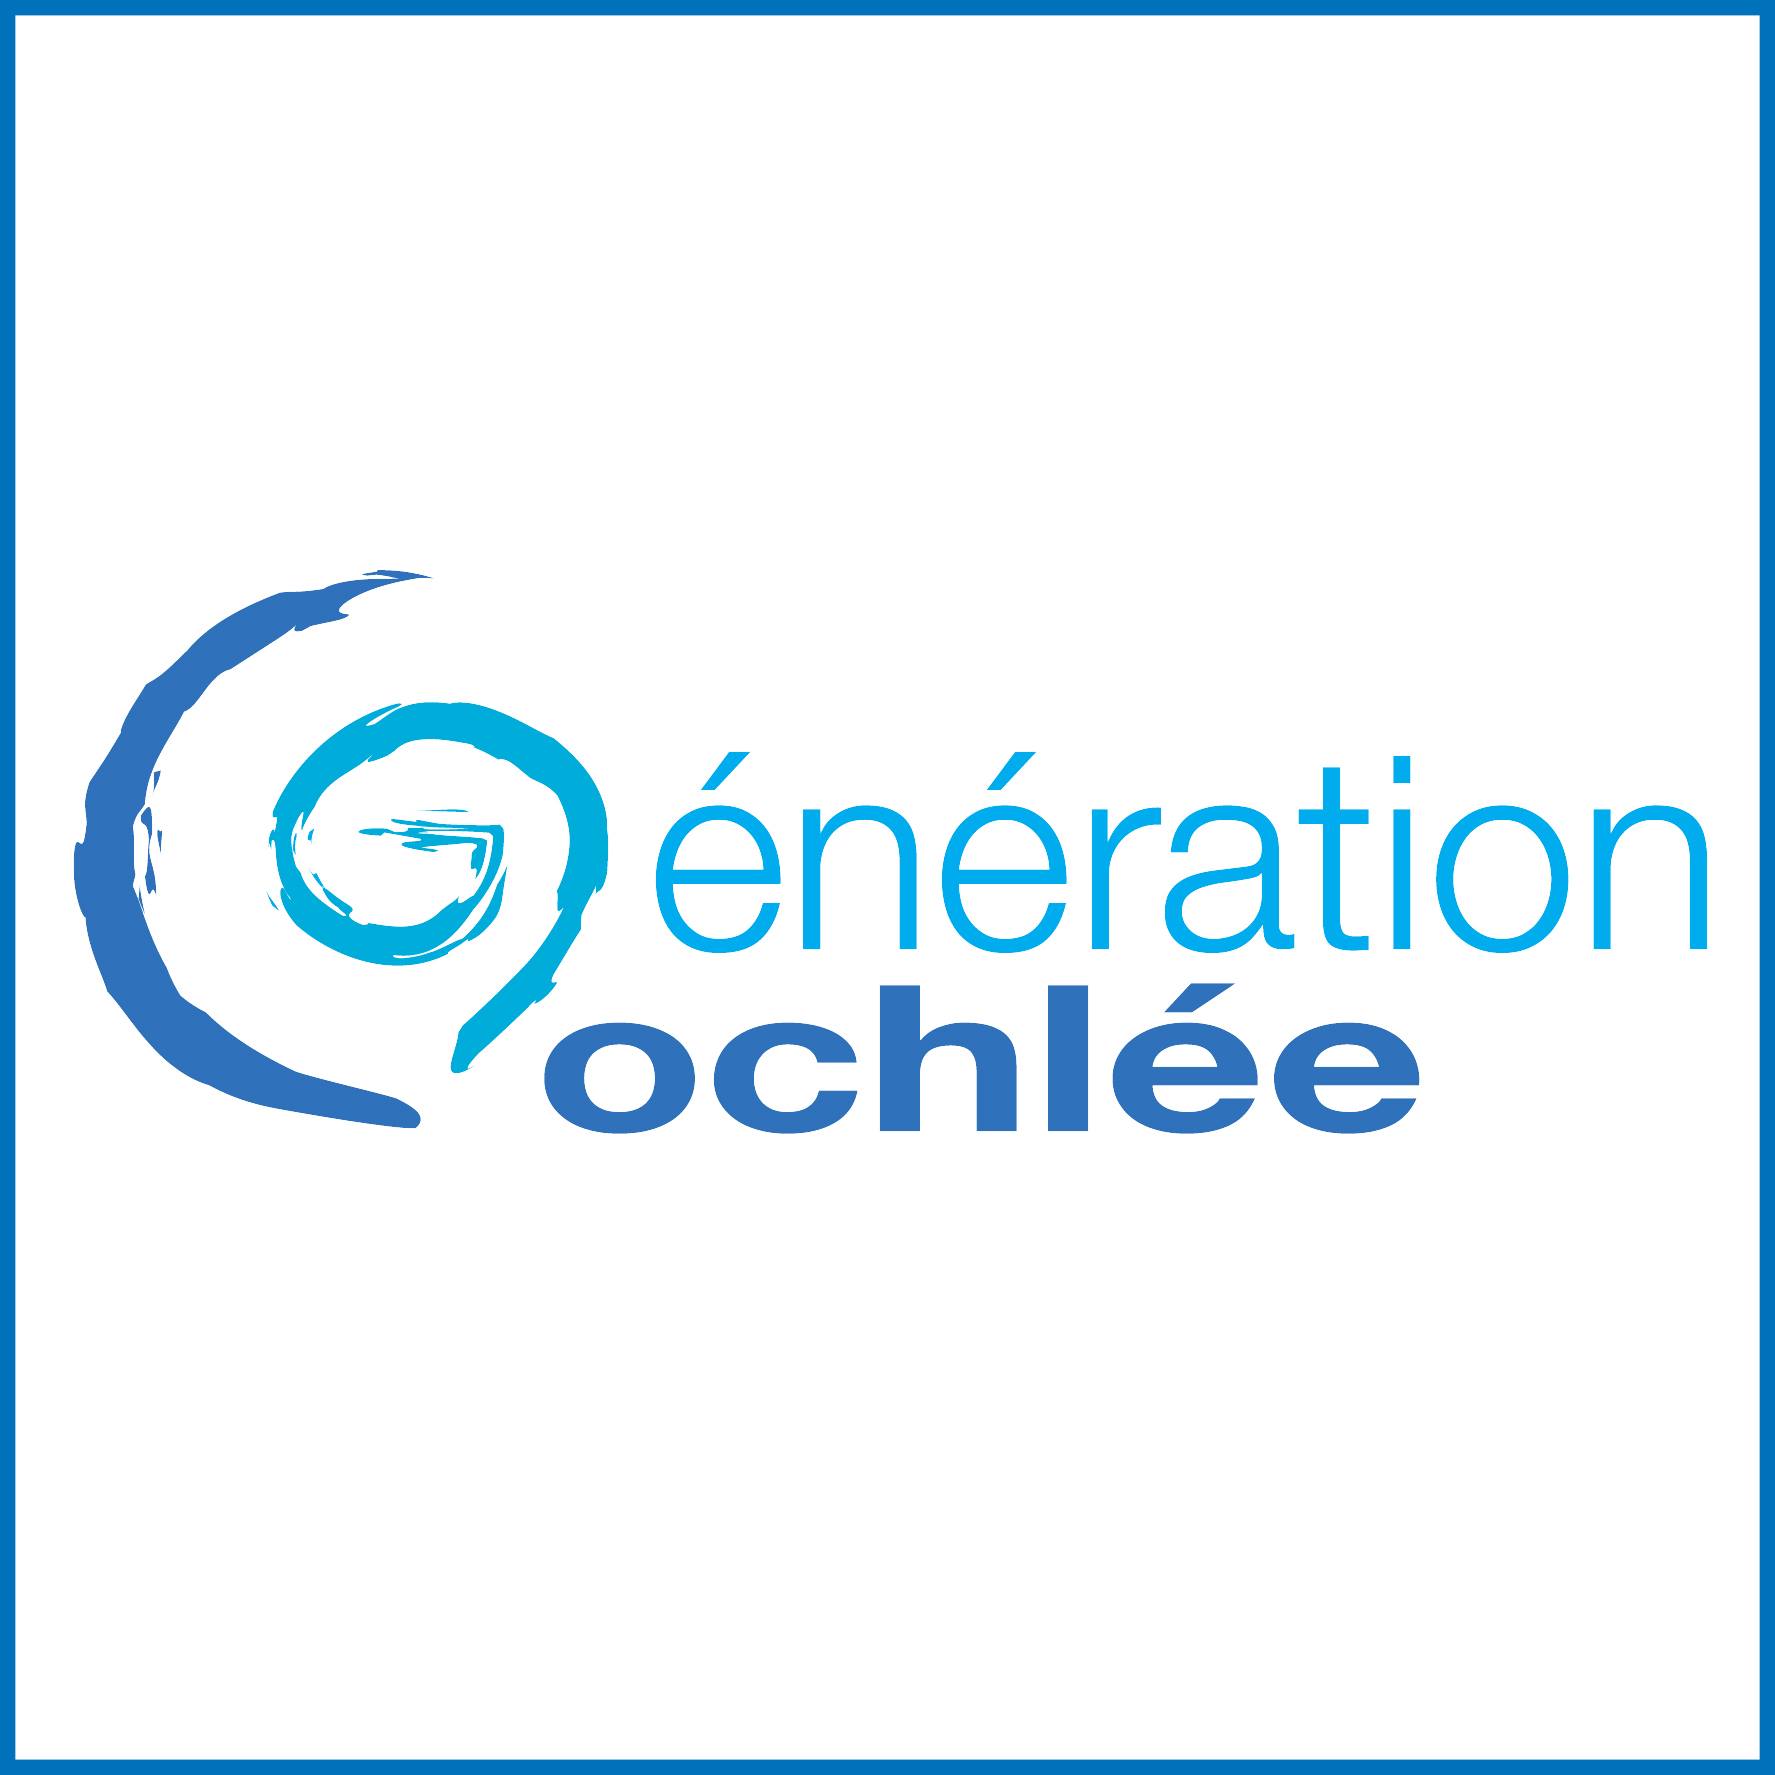 Association Génération Cochlee